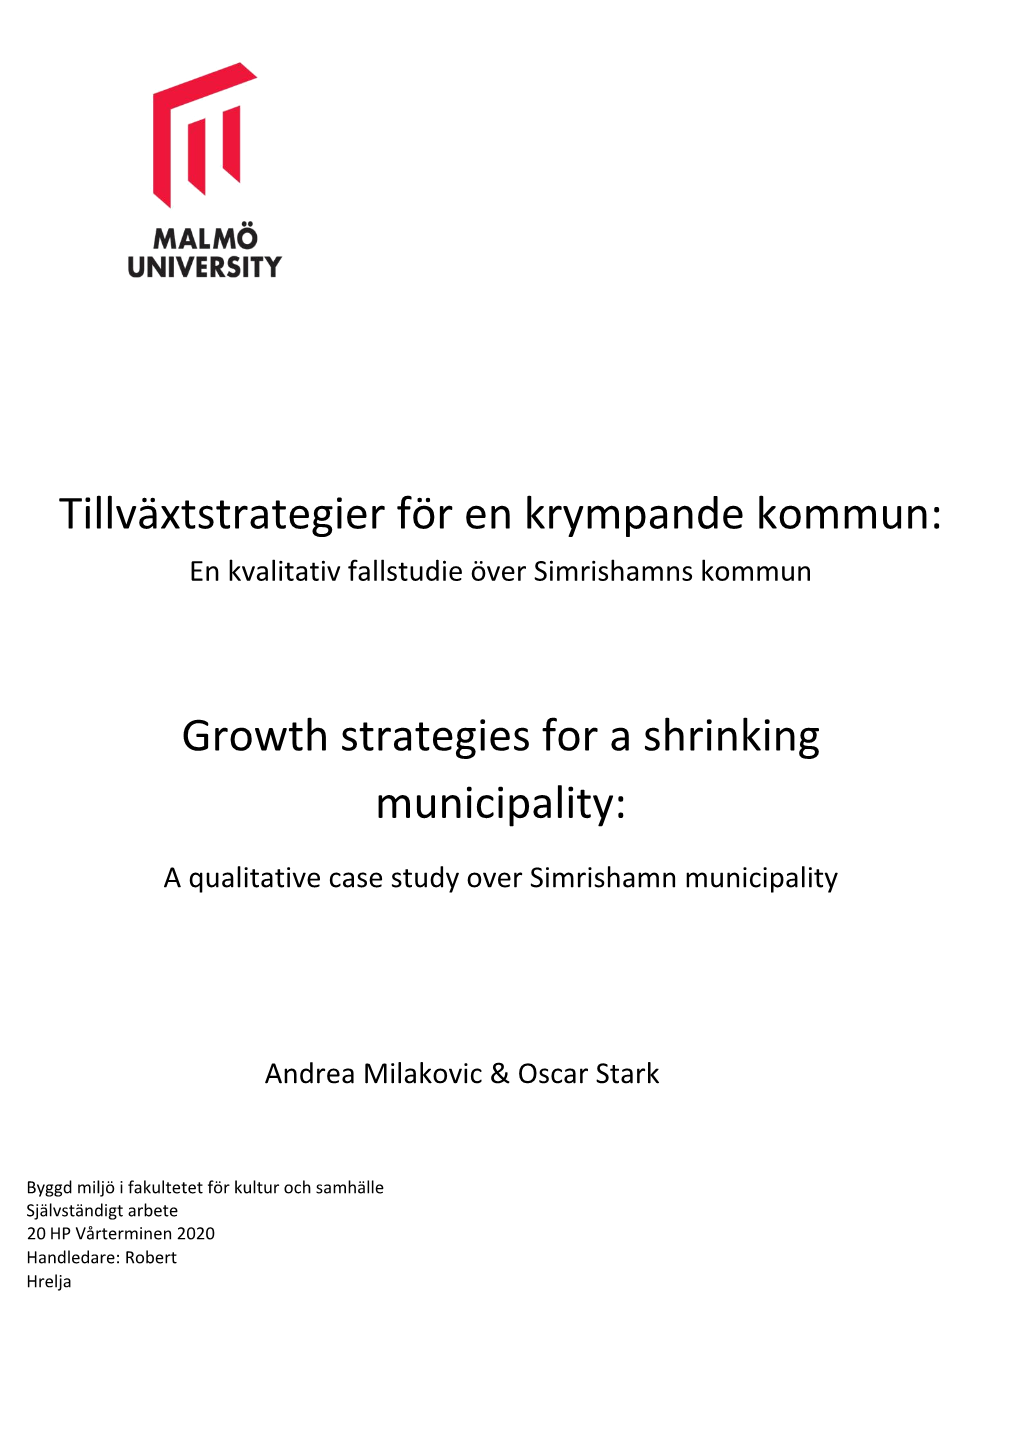 Tillväxtstrategier För En Krympande Kommun: Growth Strategies